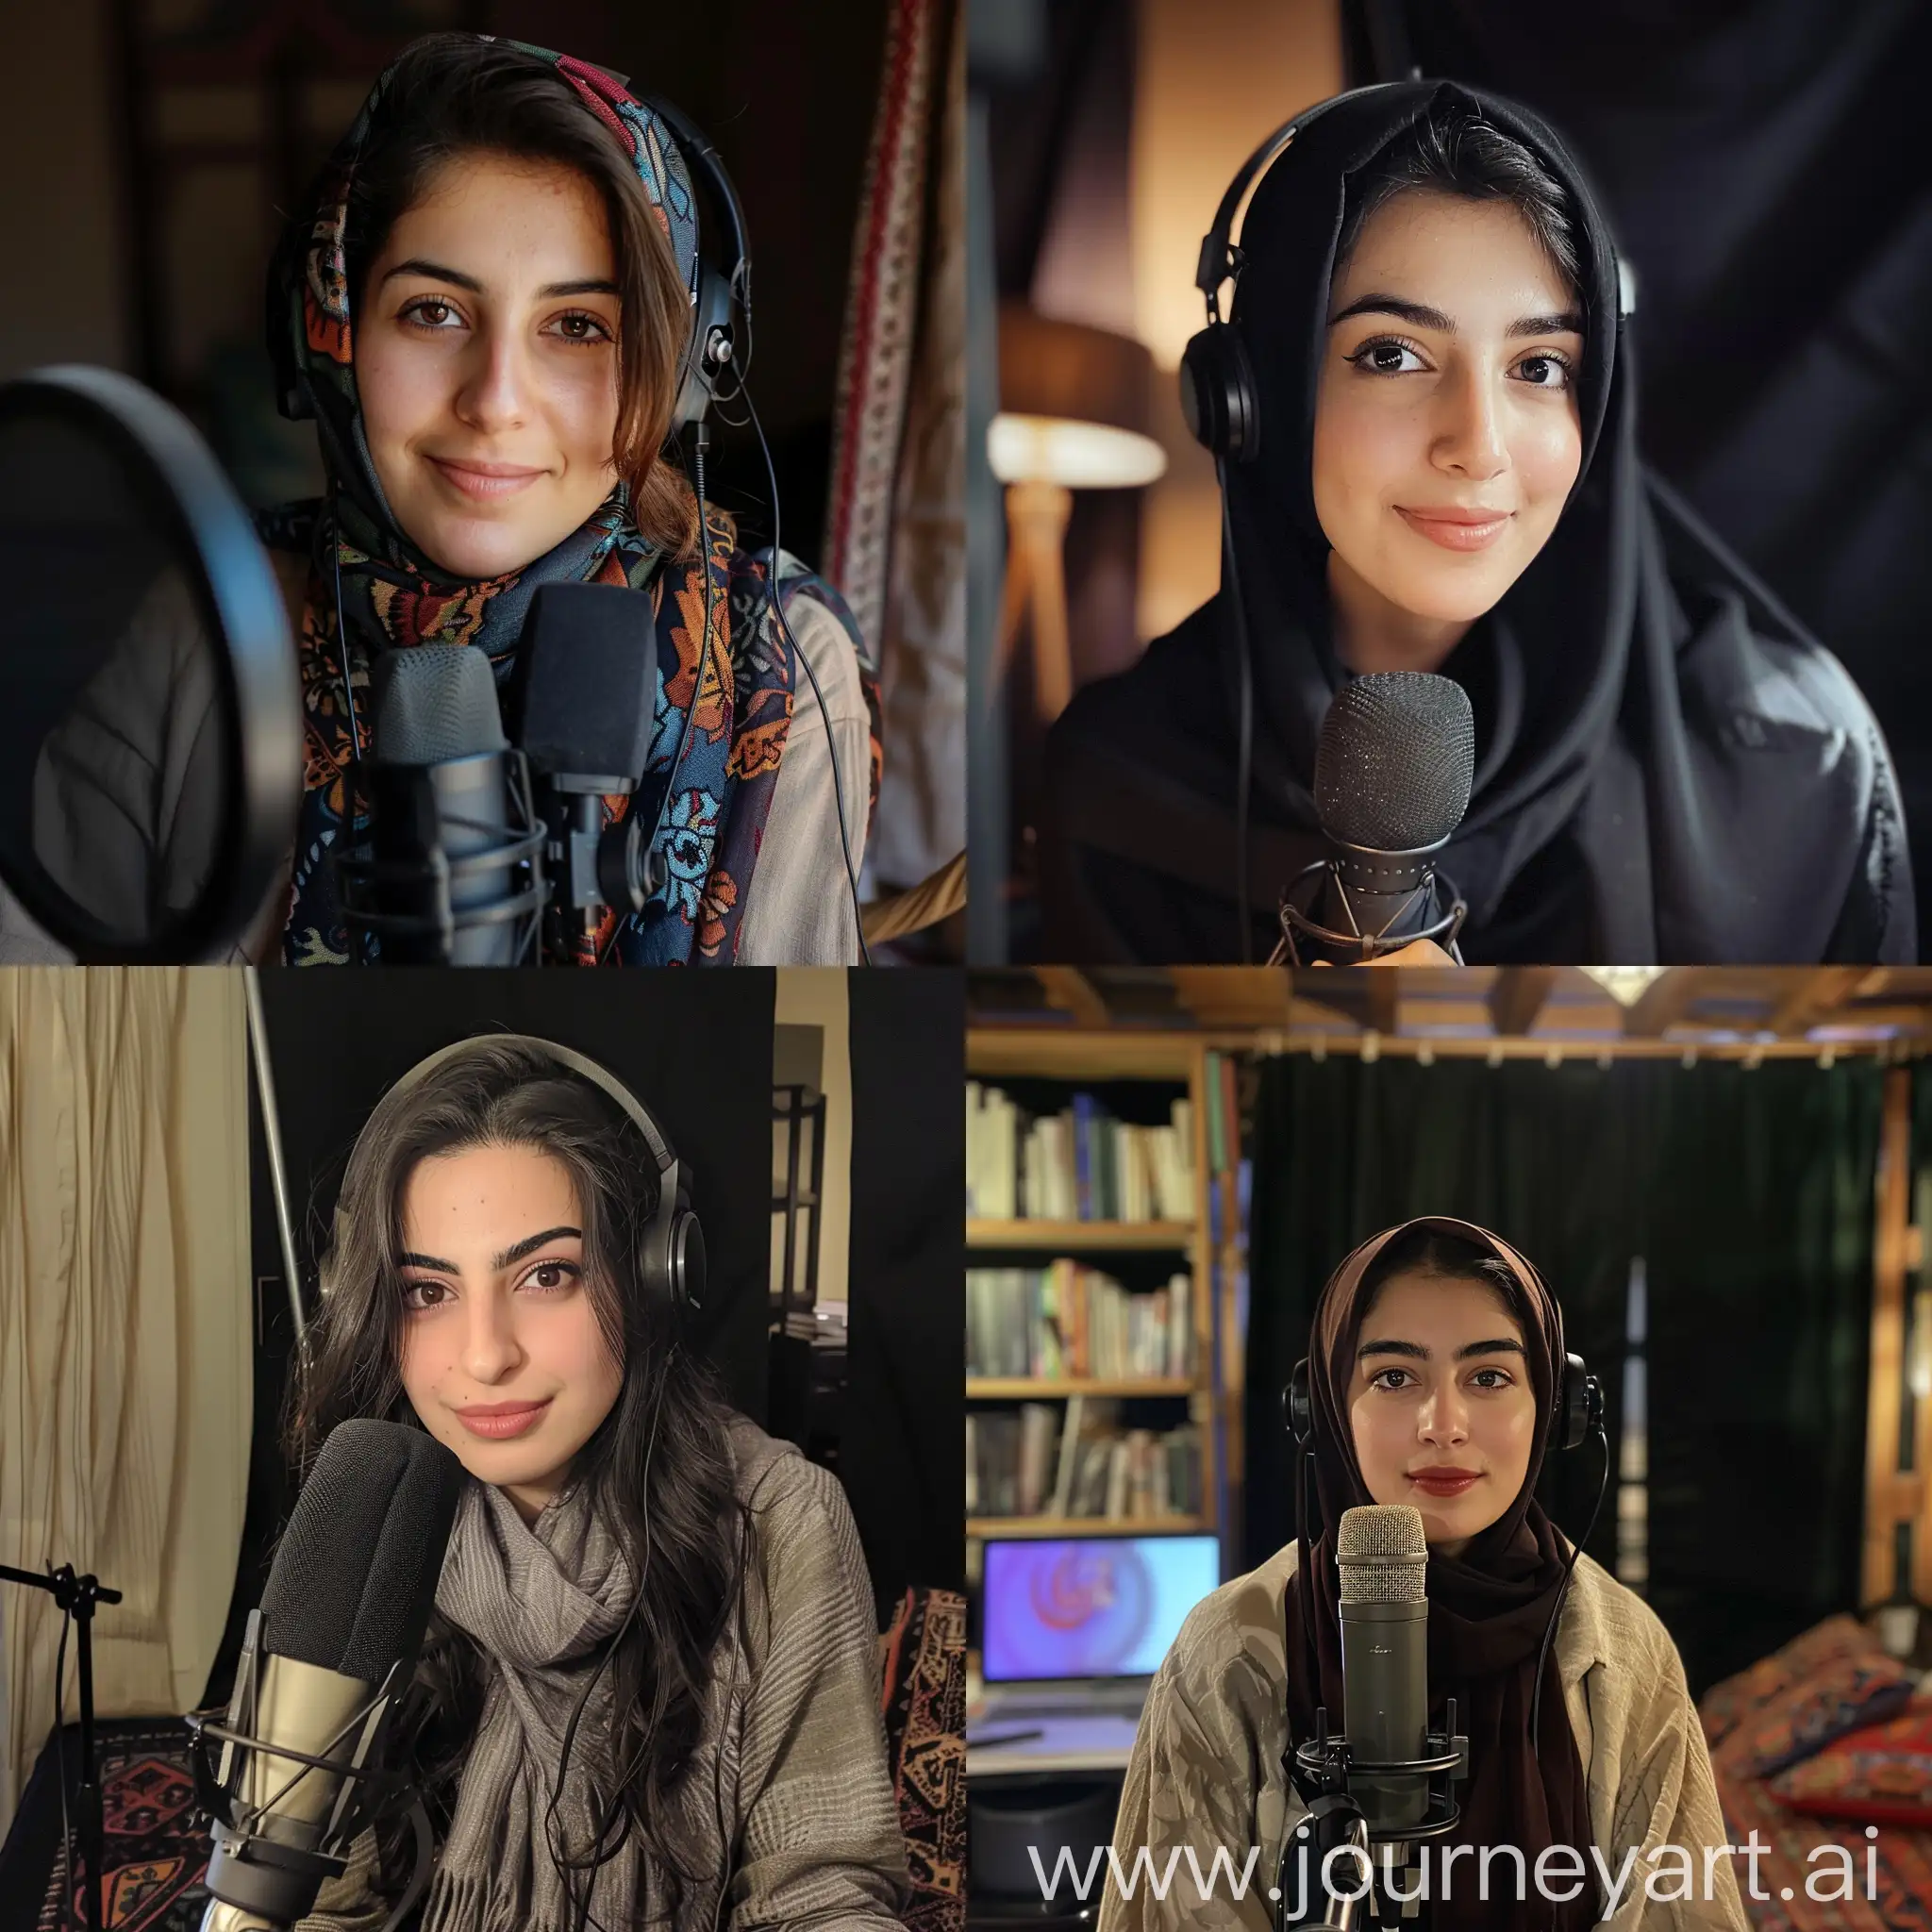 یک دختر زیبای ایرانی میخوام که میزبان یک پادکست هست